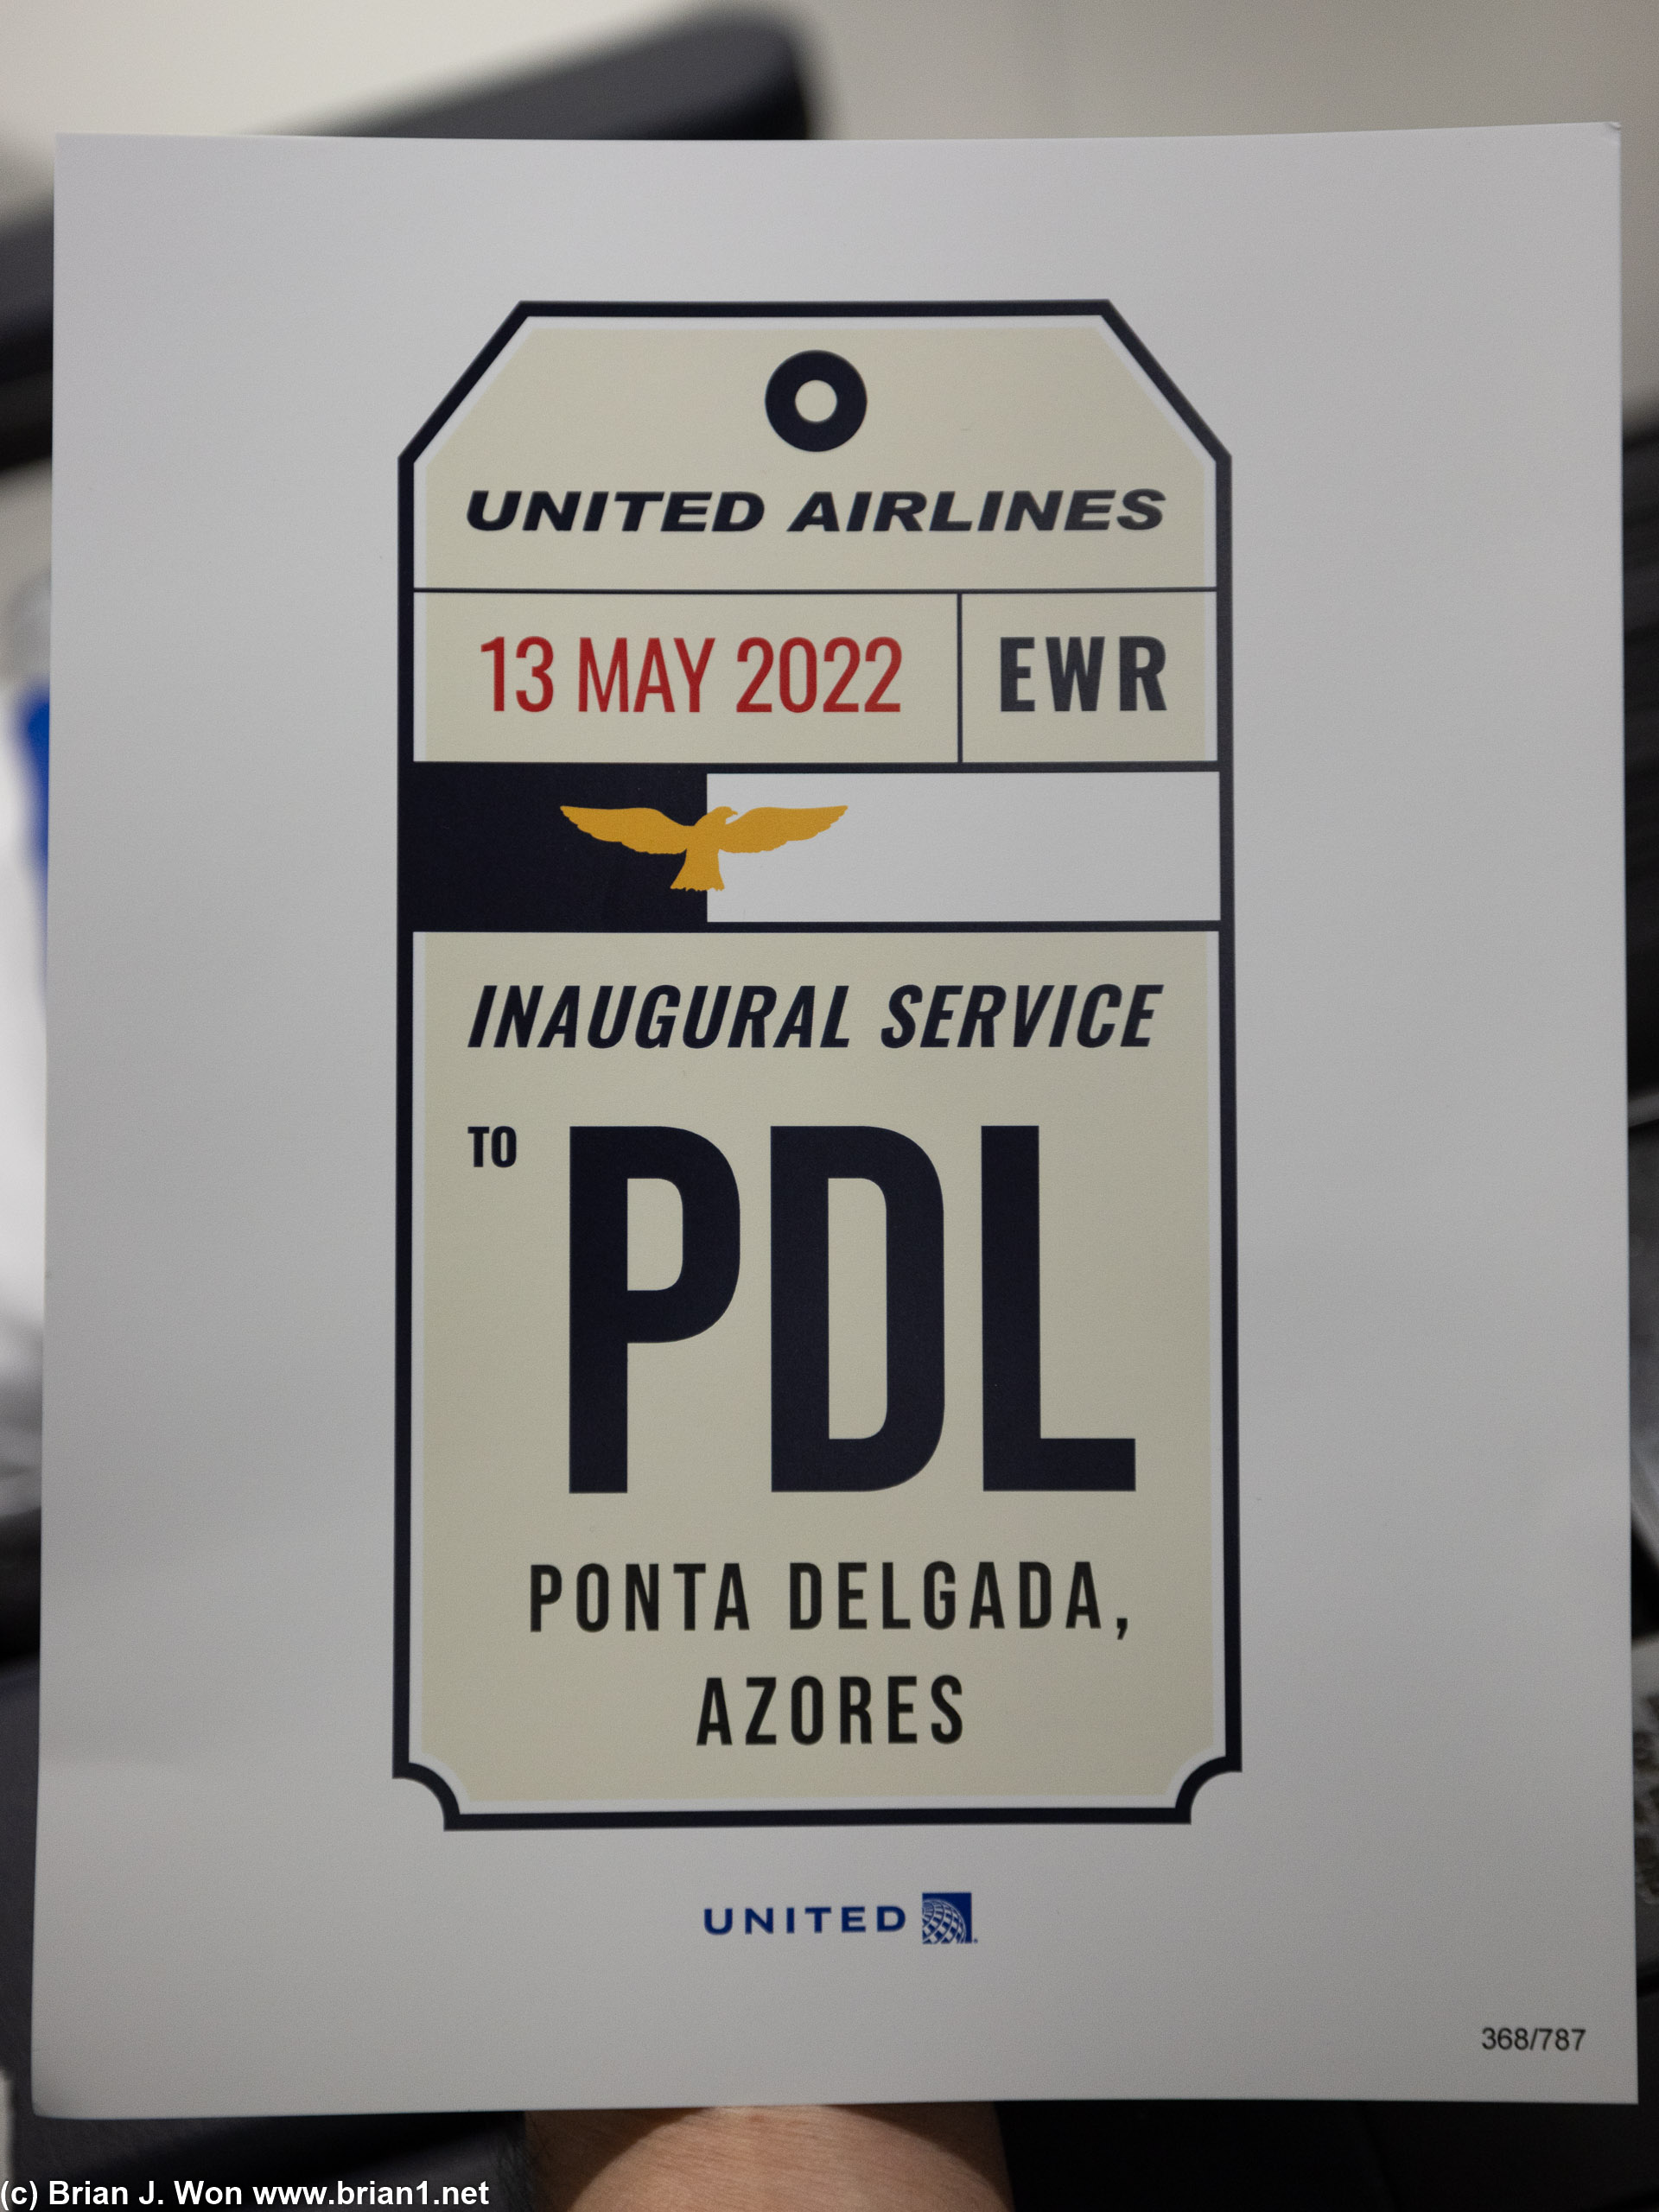 Inaugural service from Newark, NJ to Ponta Delgada, Azores, Spain.